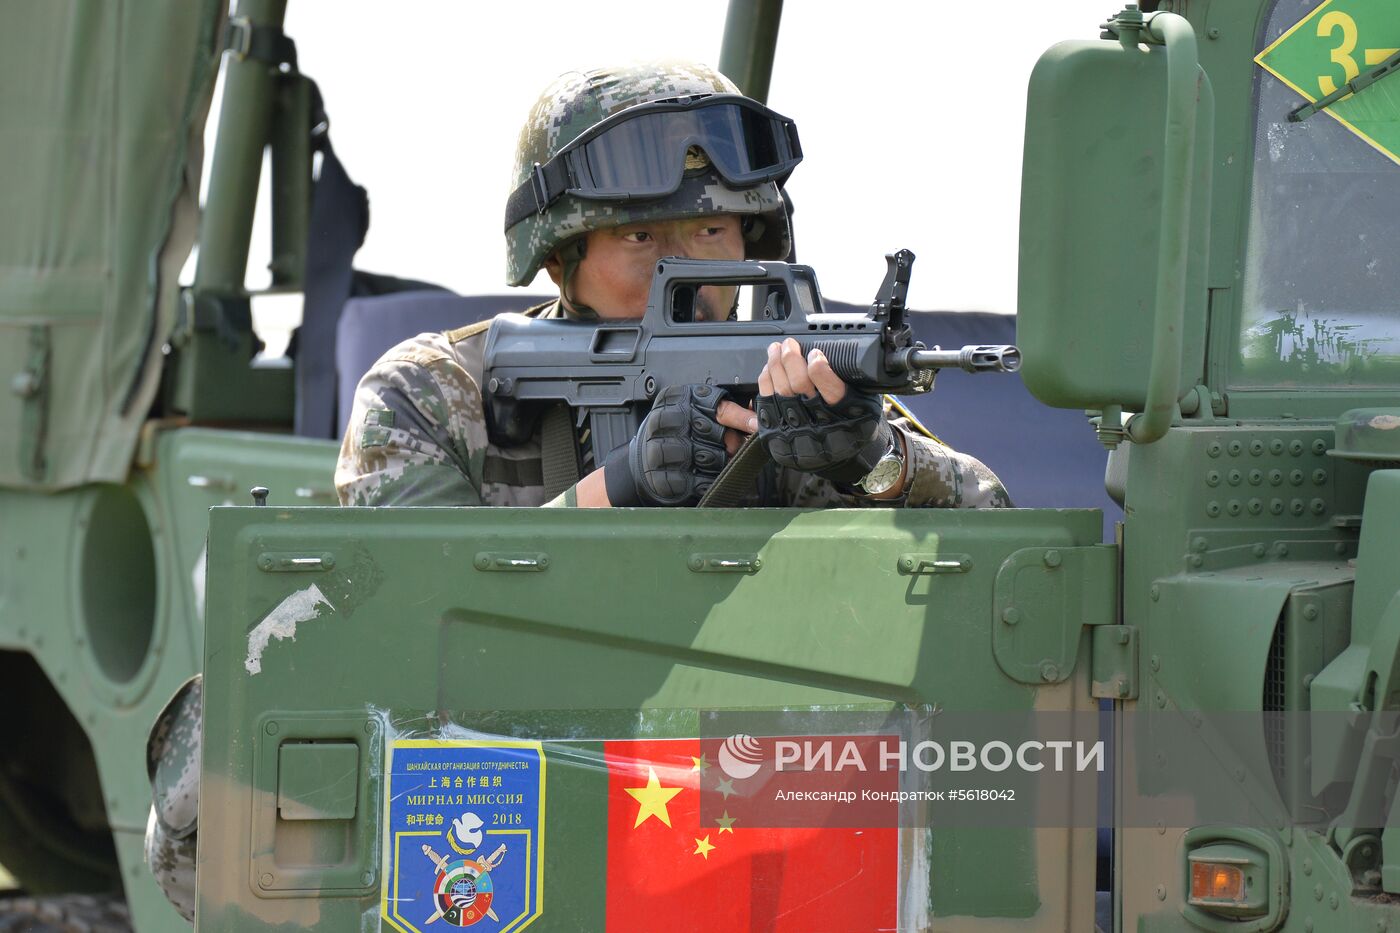 Антитеррористические учения вооруженных сил стран-членов ШОС "Мирная миссия-2018"